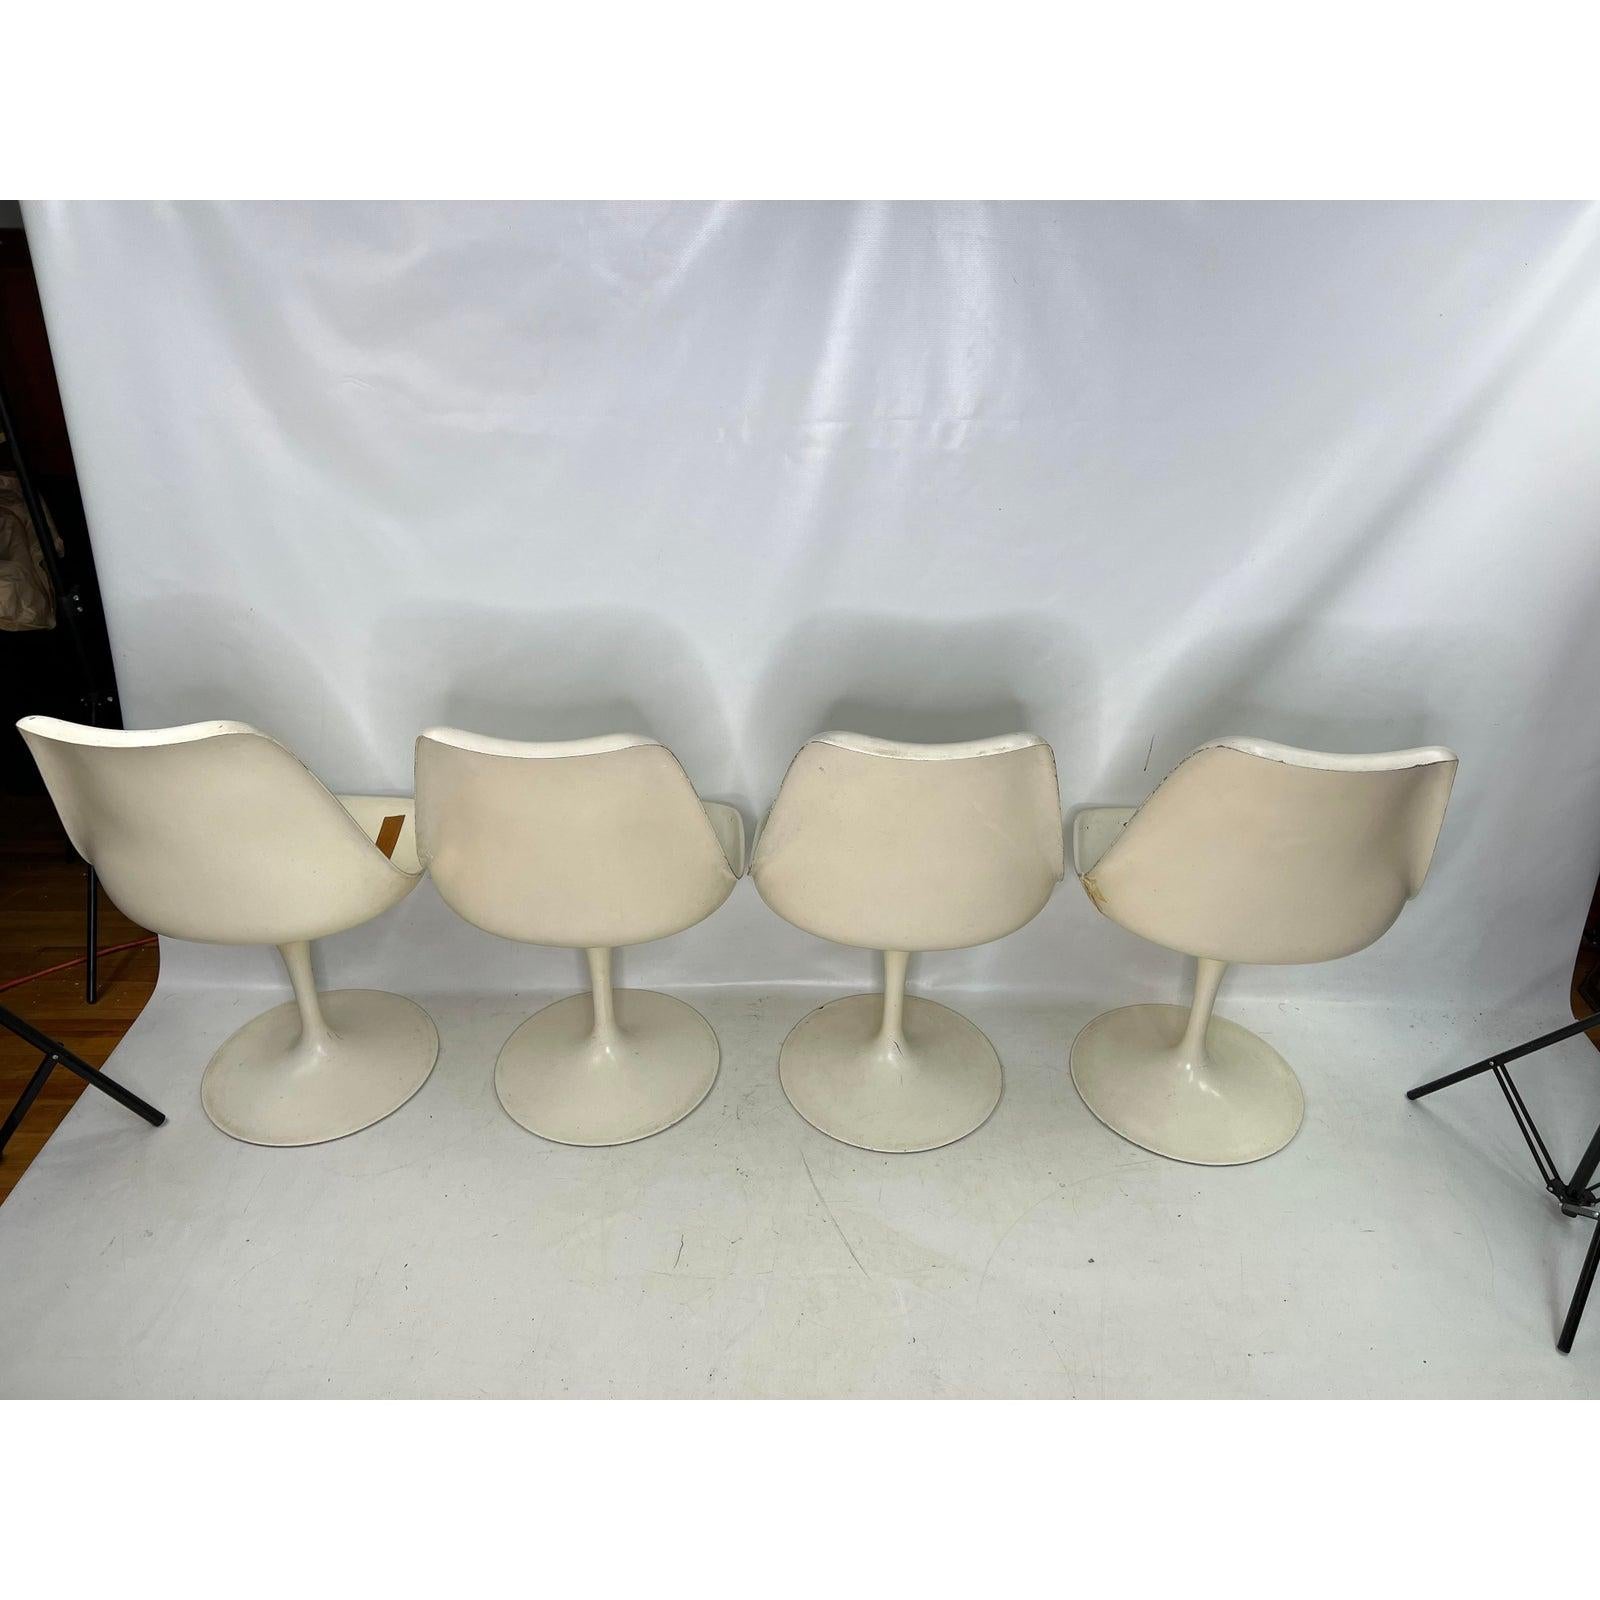 saarinen Tulip-Stühle von Knoll aus den 1970er Jahren, 4 Stück.